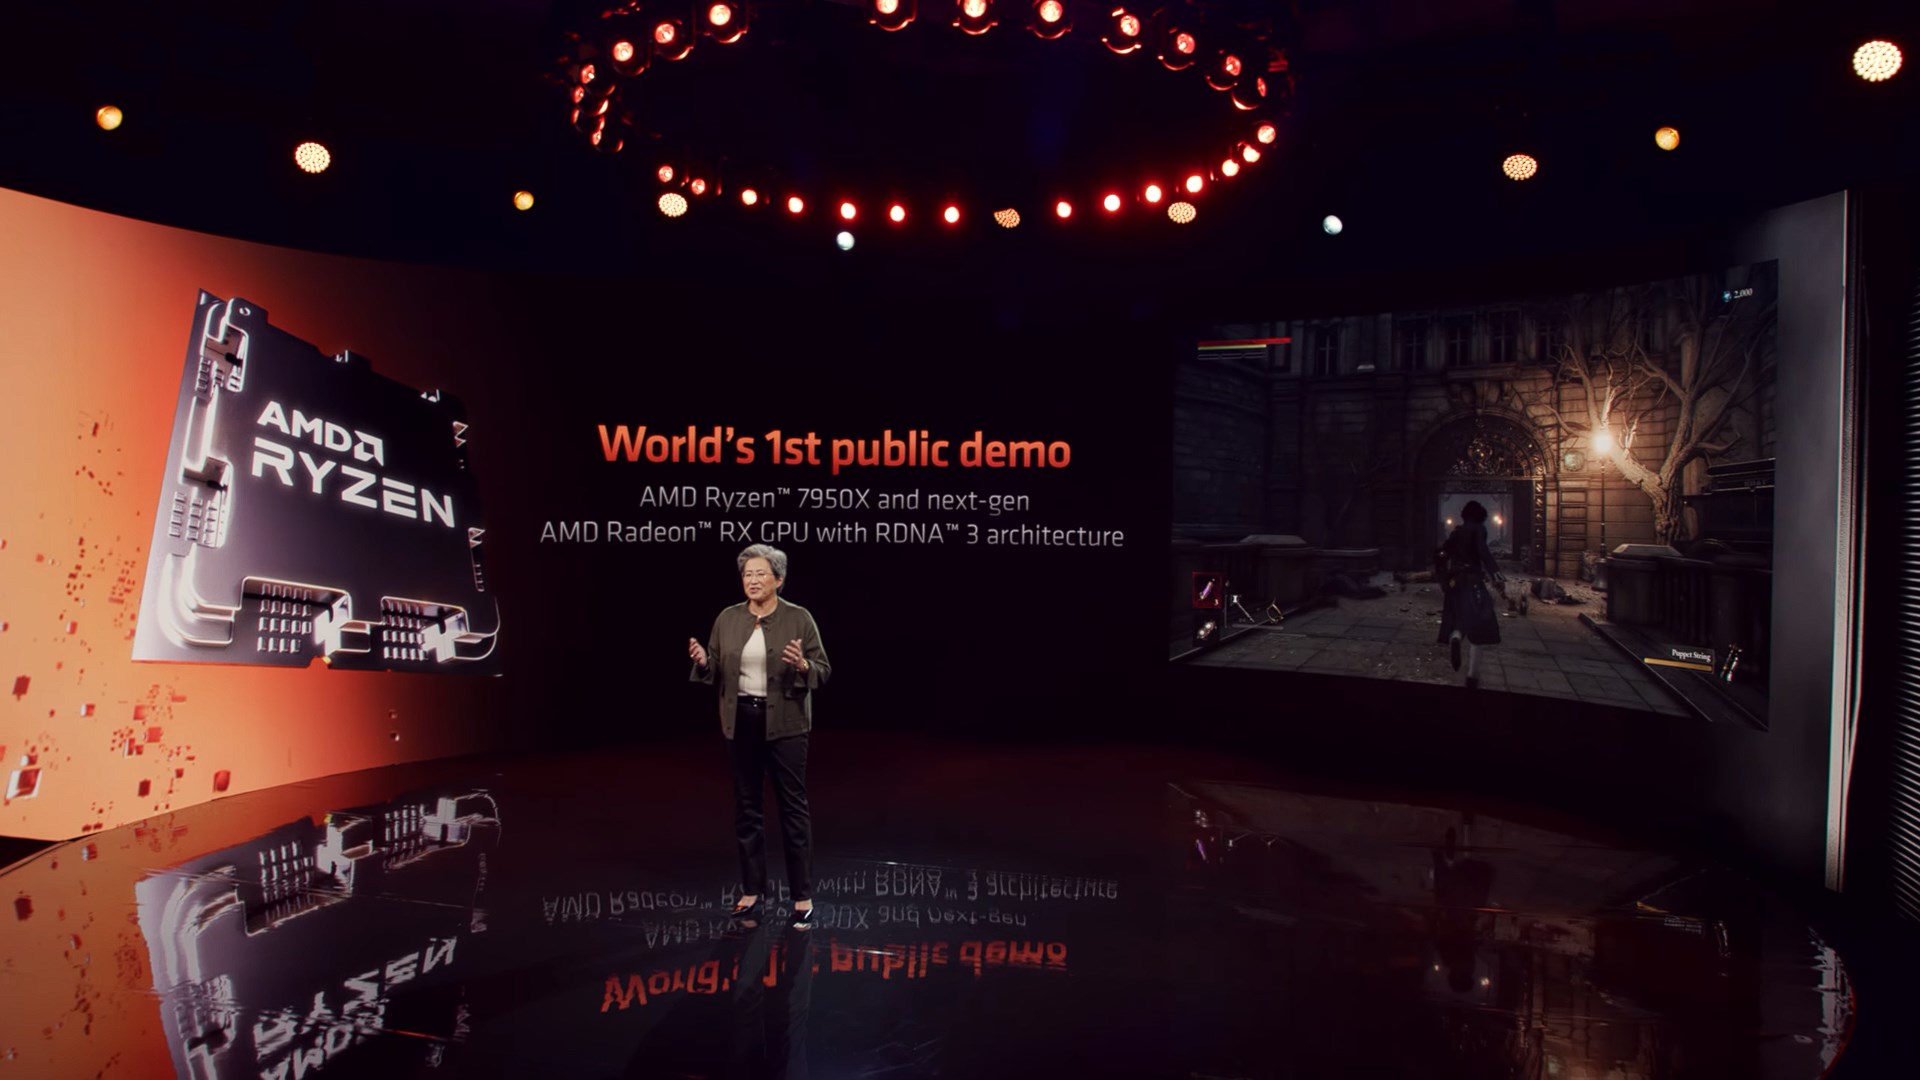 AMD yeni nesil Radeon RX 7000 ekran kartlarını gösterdi